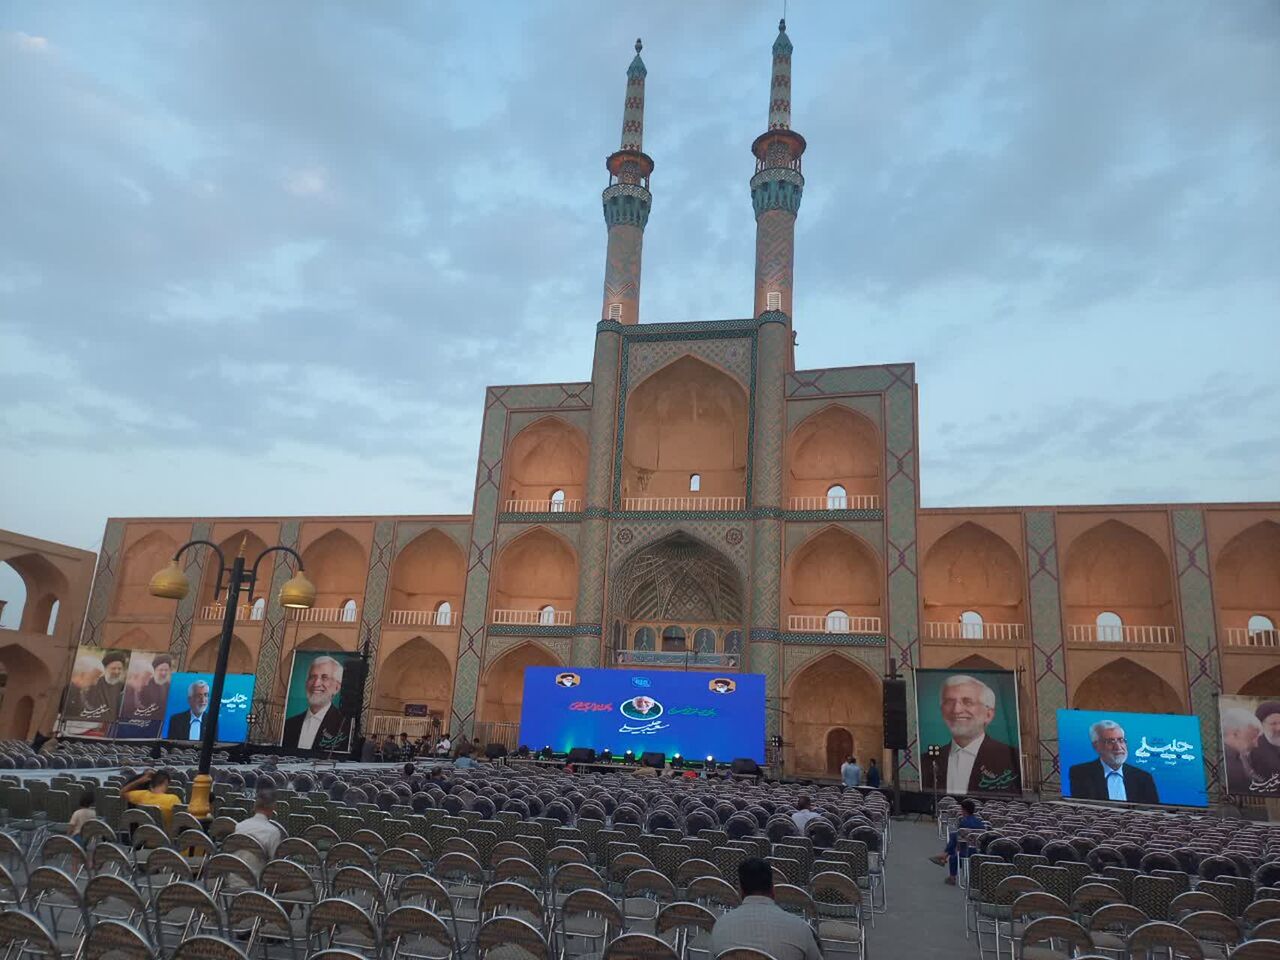 فیلم| میدان امیرچخماق یزد آماده سخنرانی سعید جلیلی برای تبلیغات انتخابات ریاست جمهوری